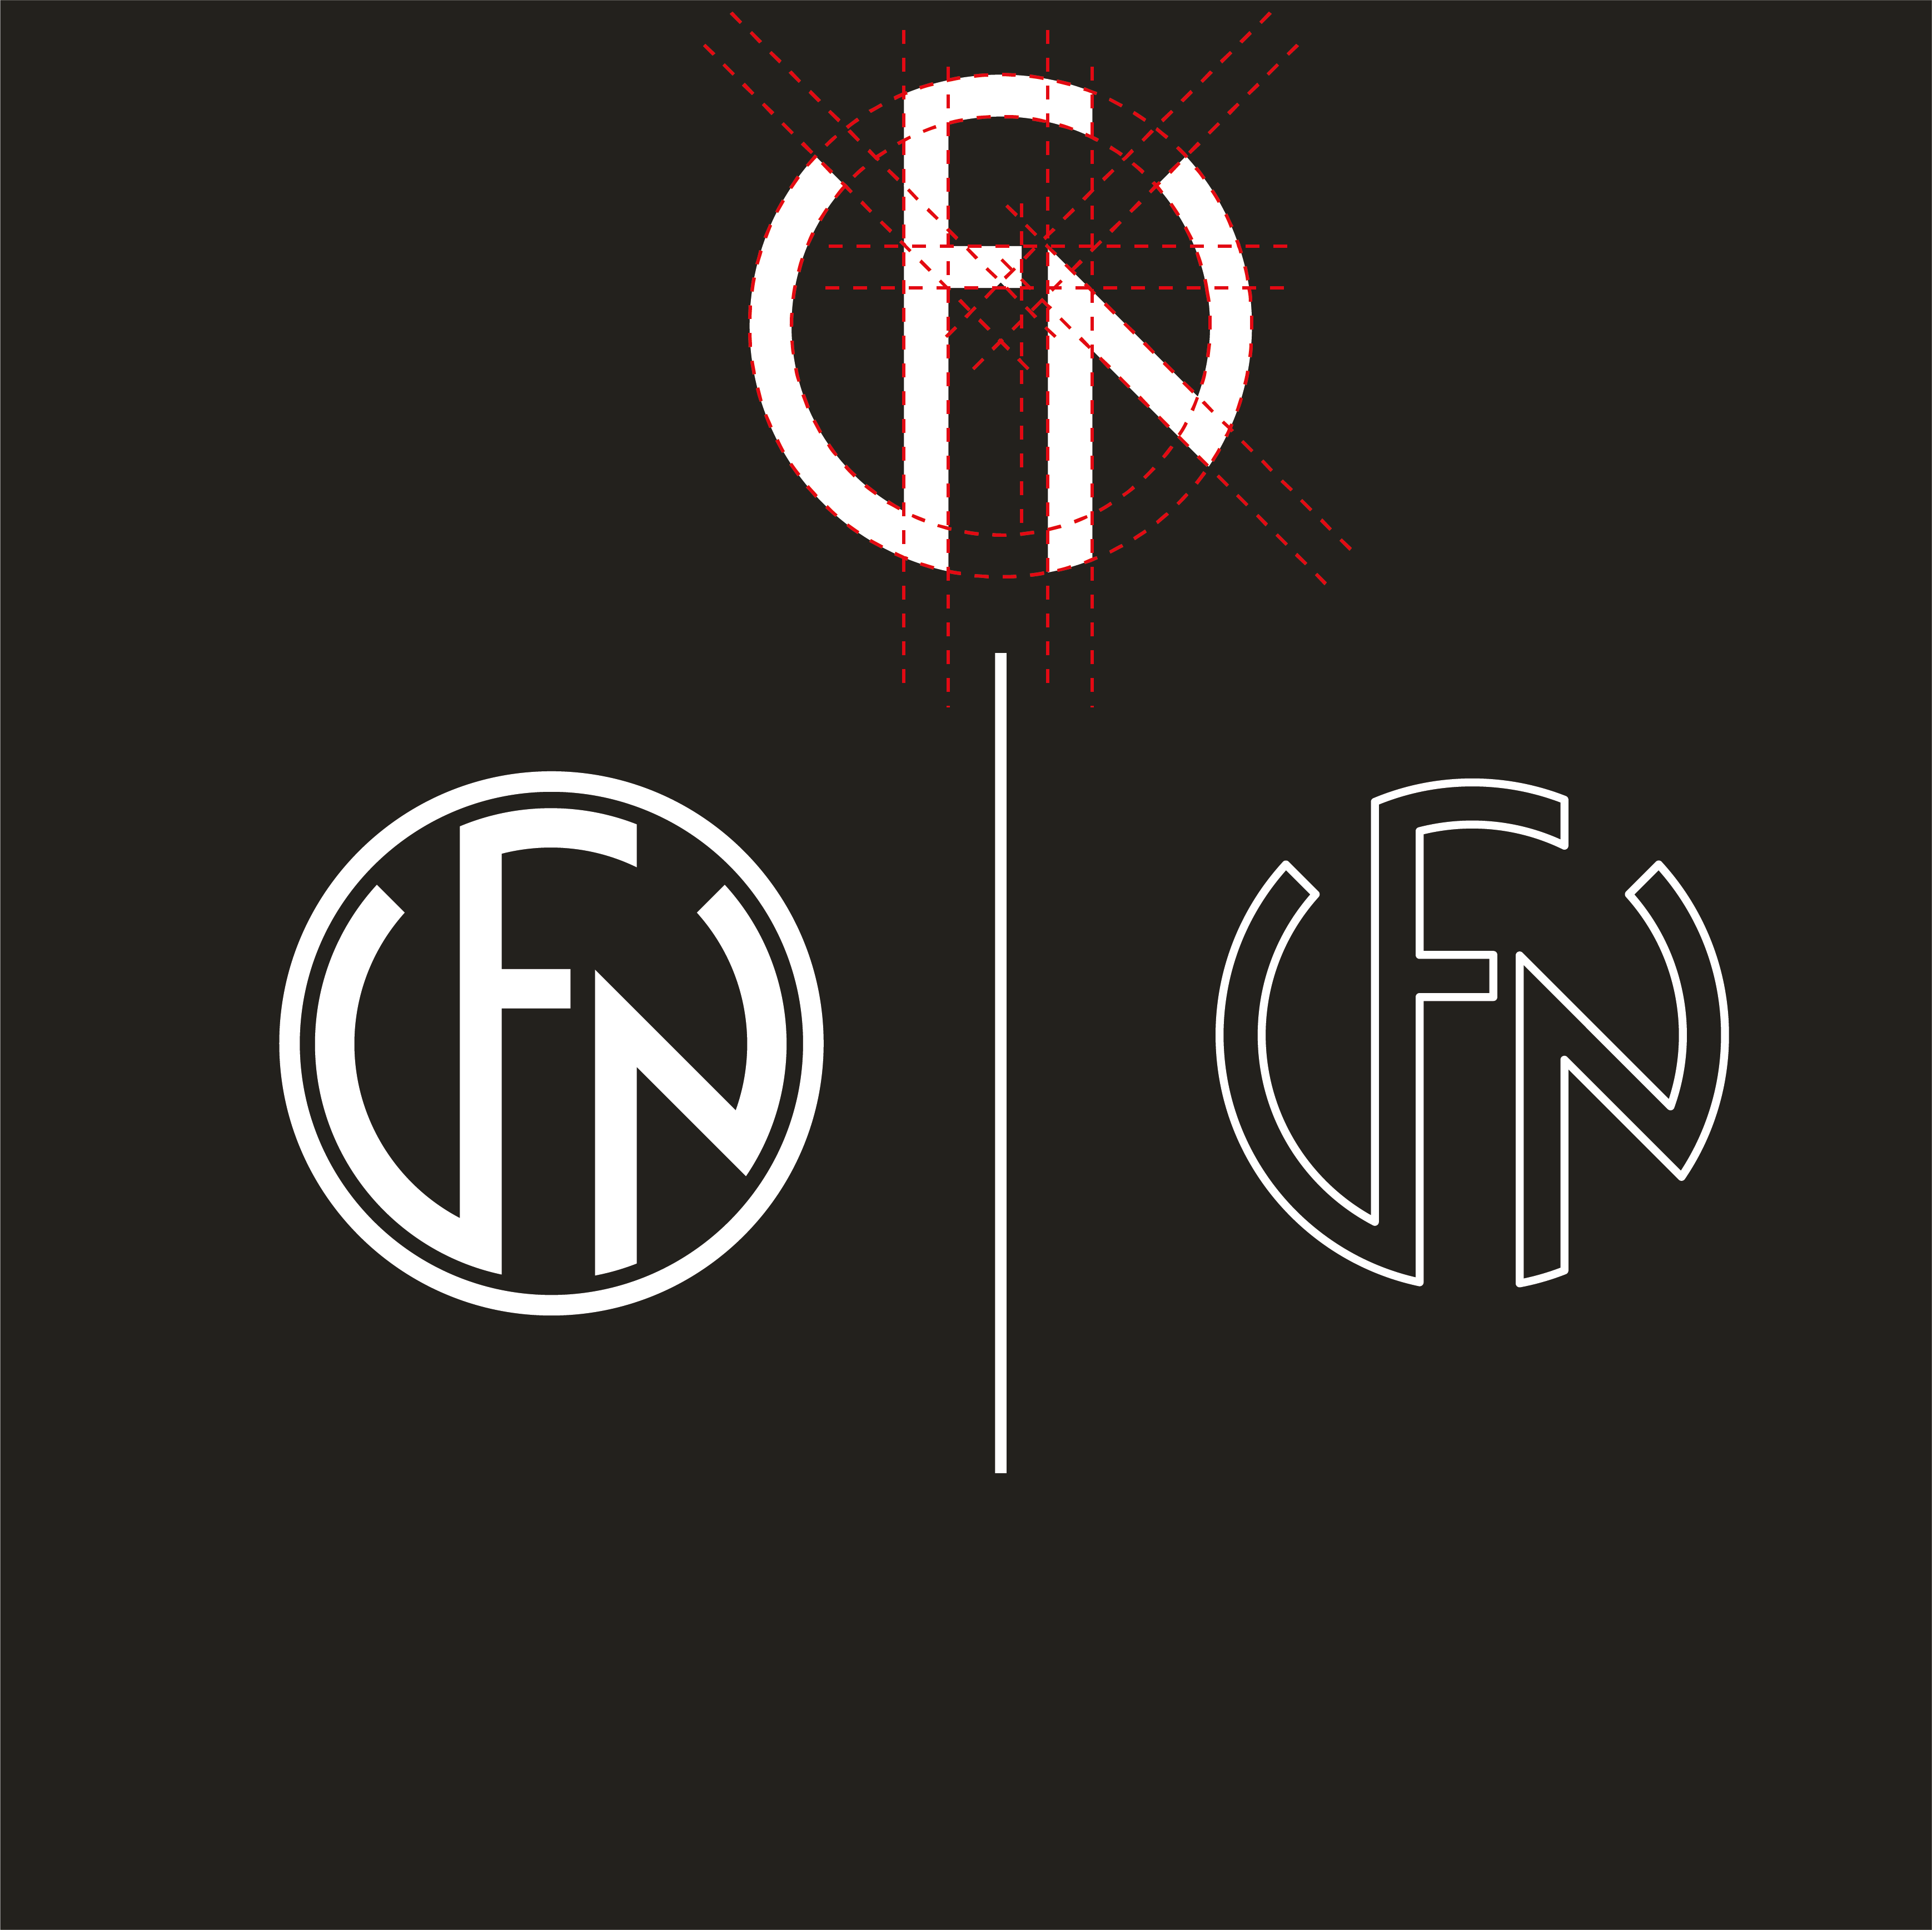 FNH Logo - FN LOGO #logo #logos #twinelogos #logodesigns #logodesigner